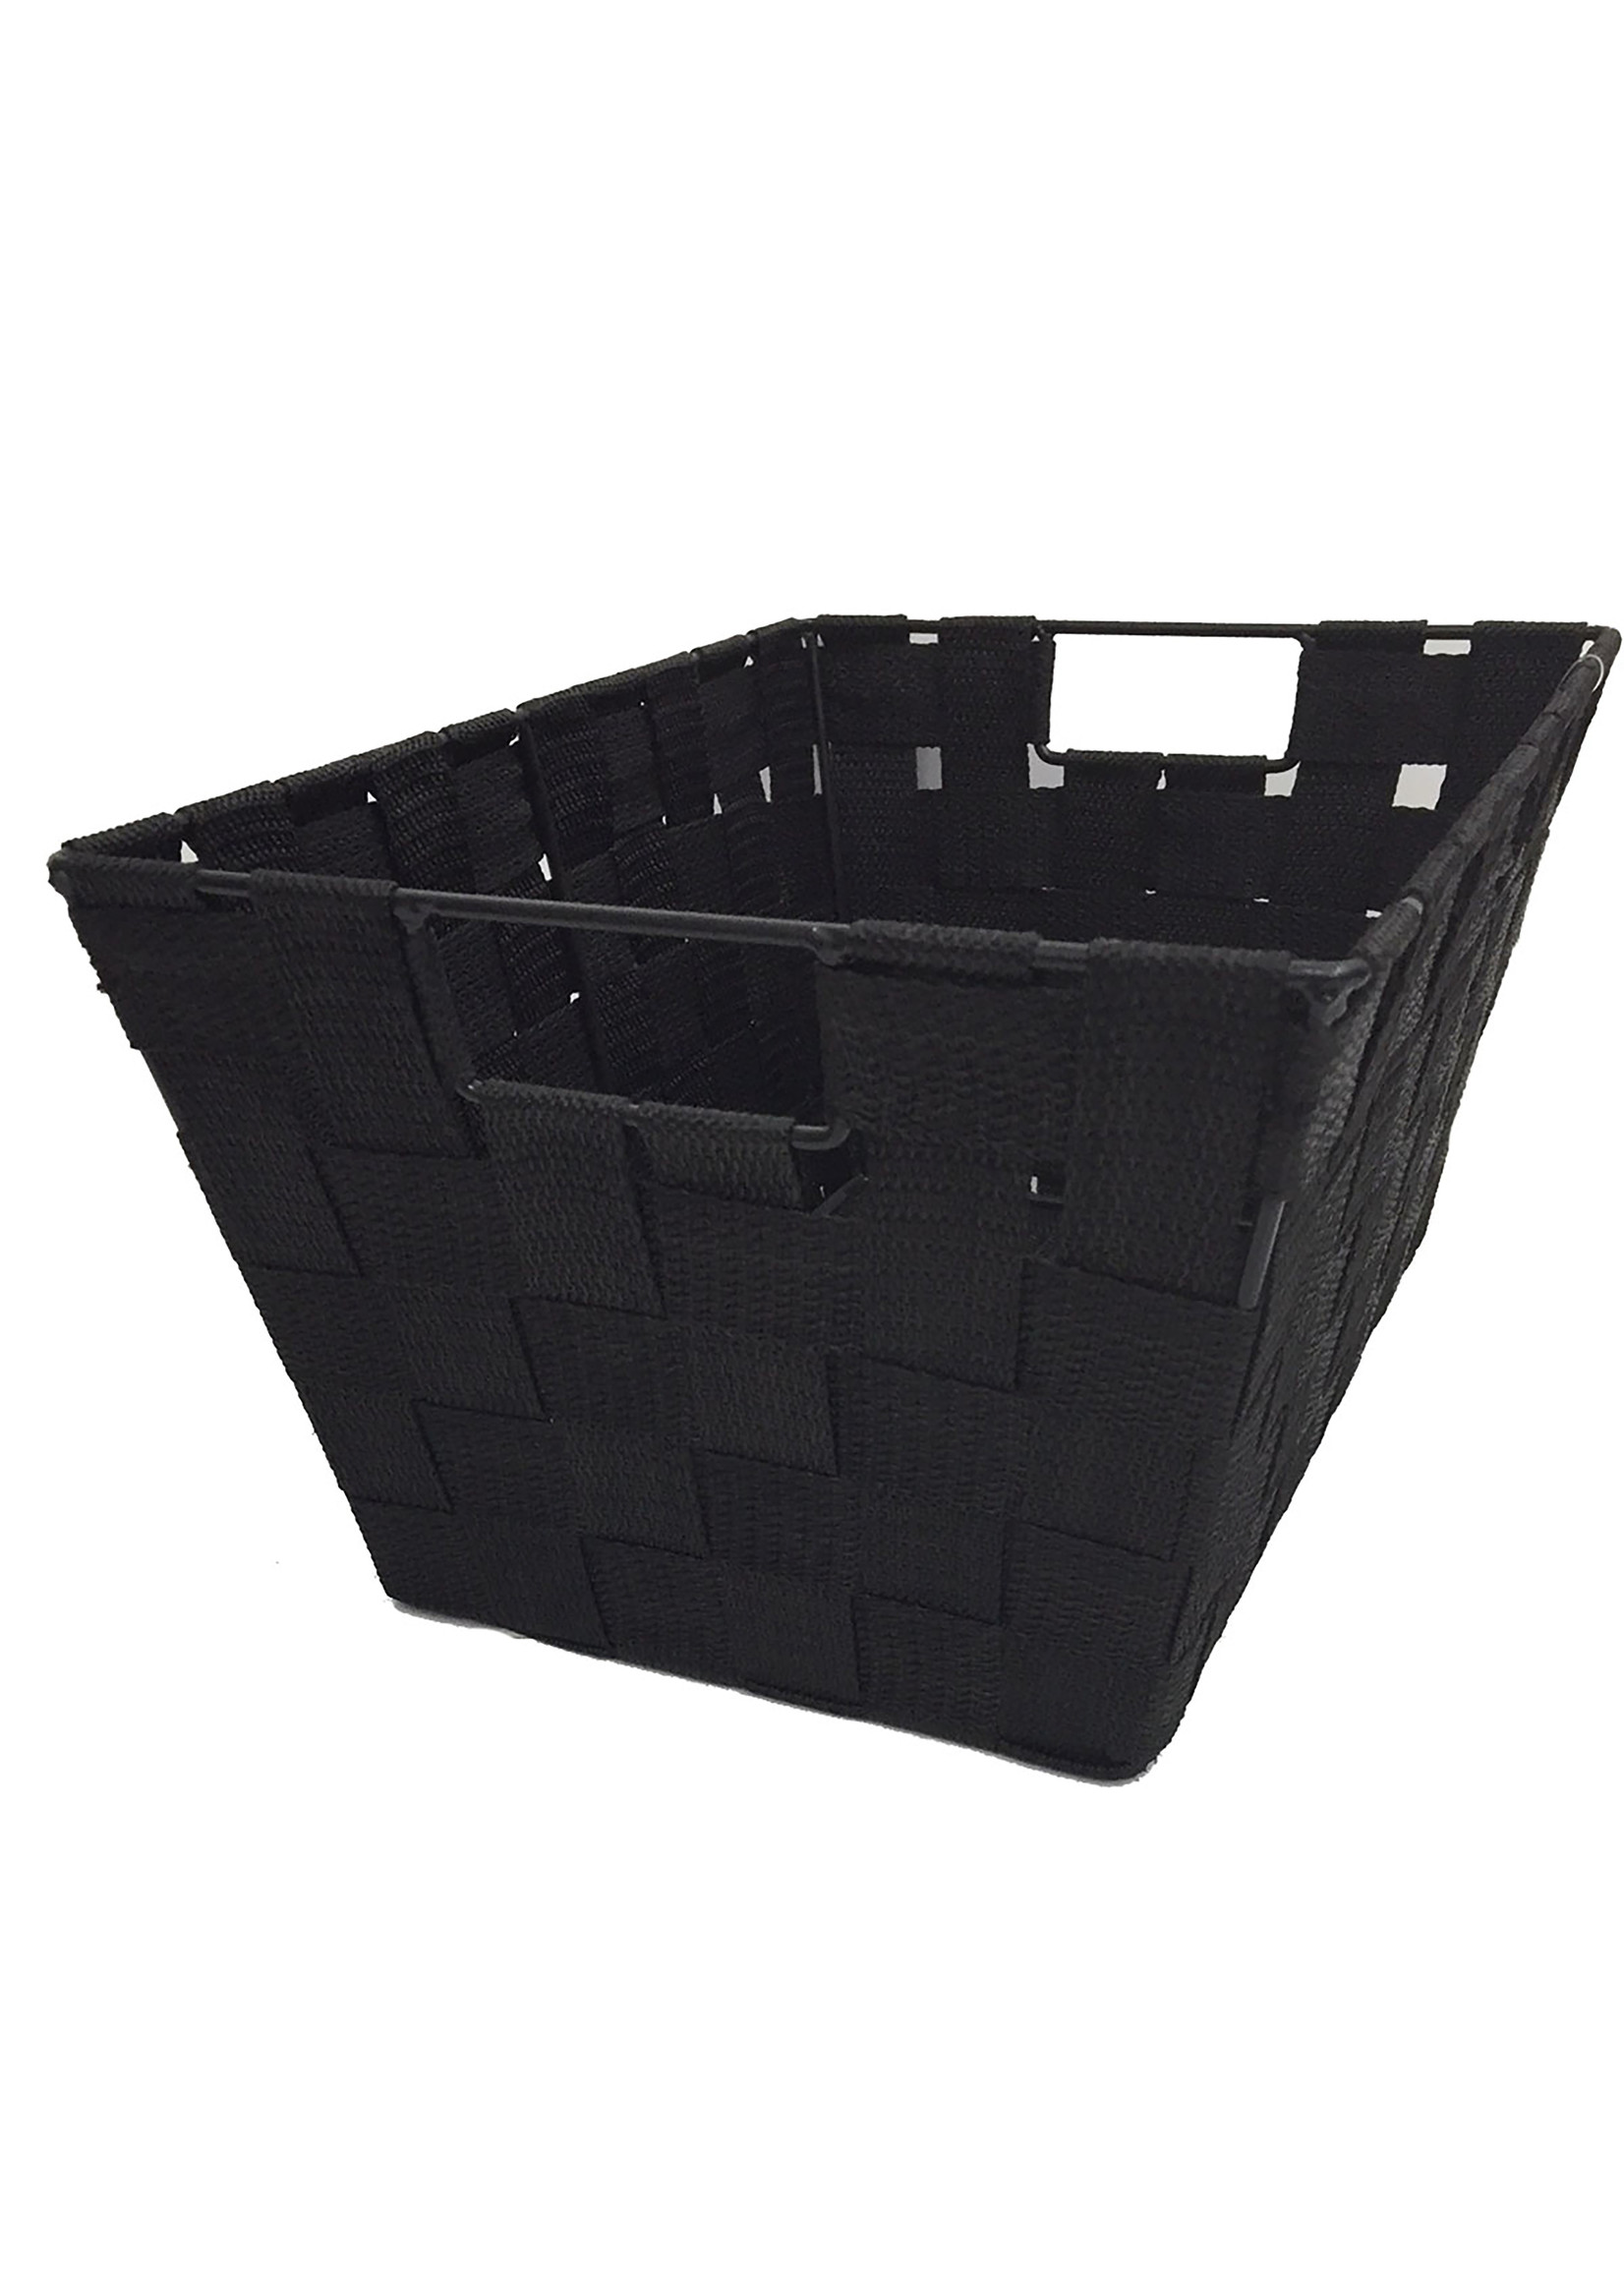 ITY INTERNATIONAL Large Black Single Nylon Storage Basket